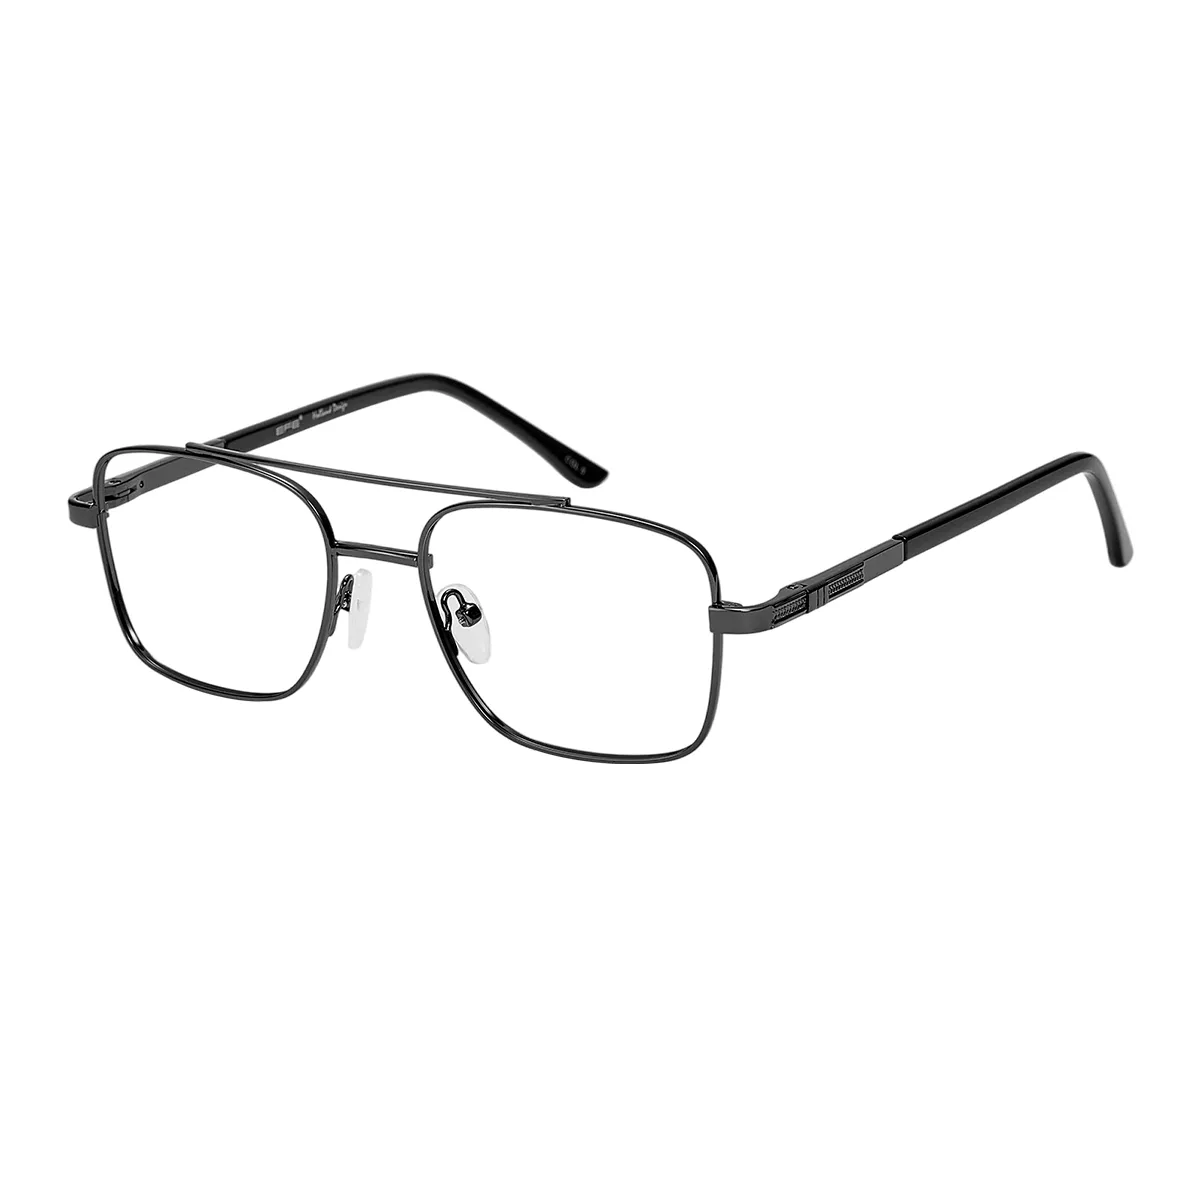 Leroy - Aviator Black Glasses for Men